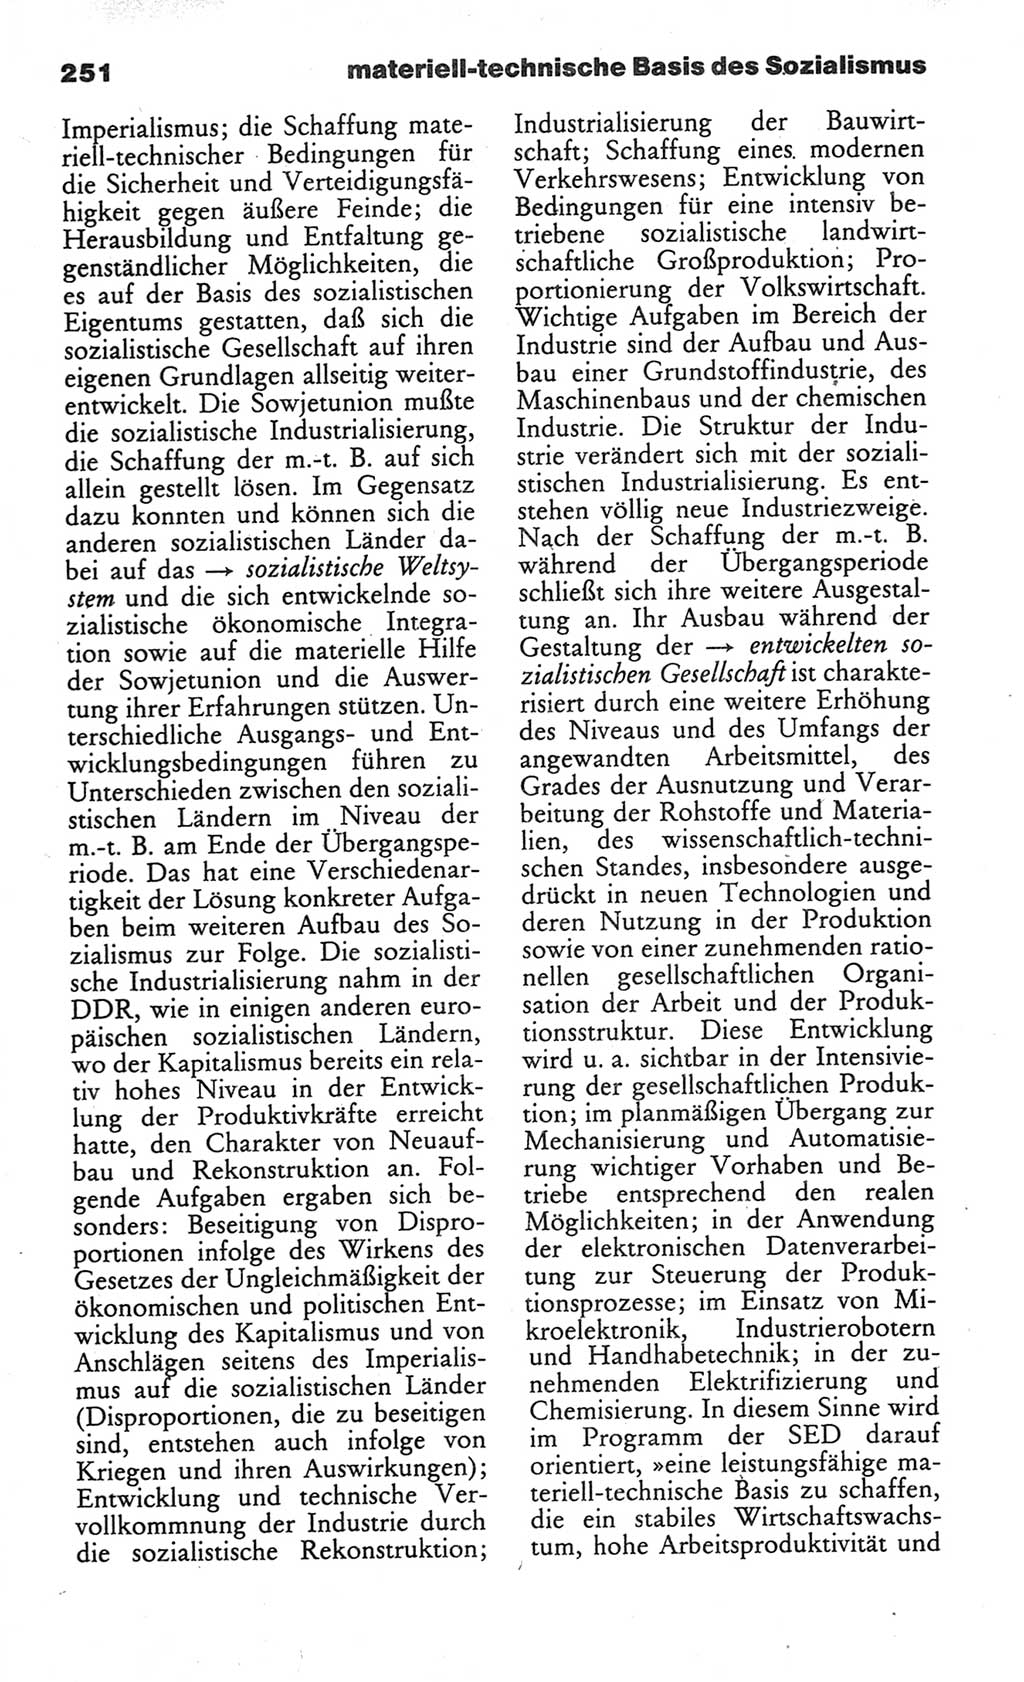 Wörterbuch des wissenschaftlichen Kommunismus [Deutsche Demokratische Republik (DDR)] 1984, Seite 251 (Wb. wiss. Komm. DDR 1984, S. 251)